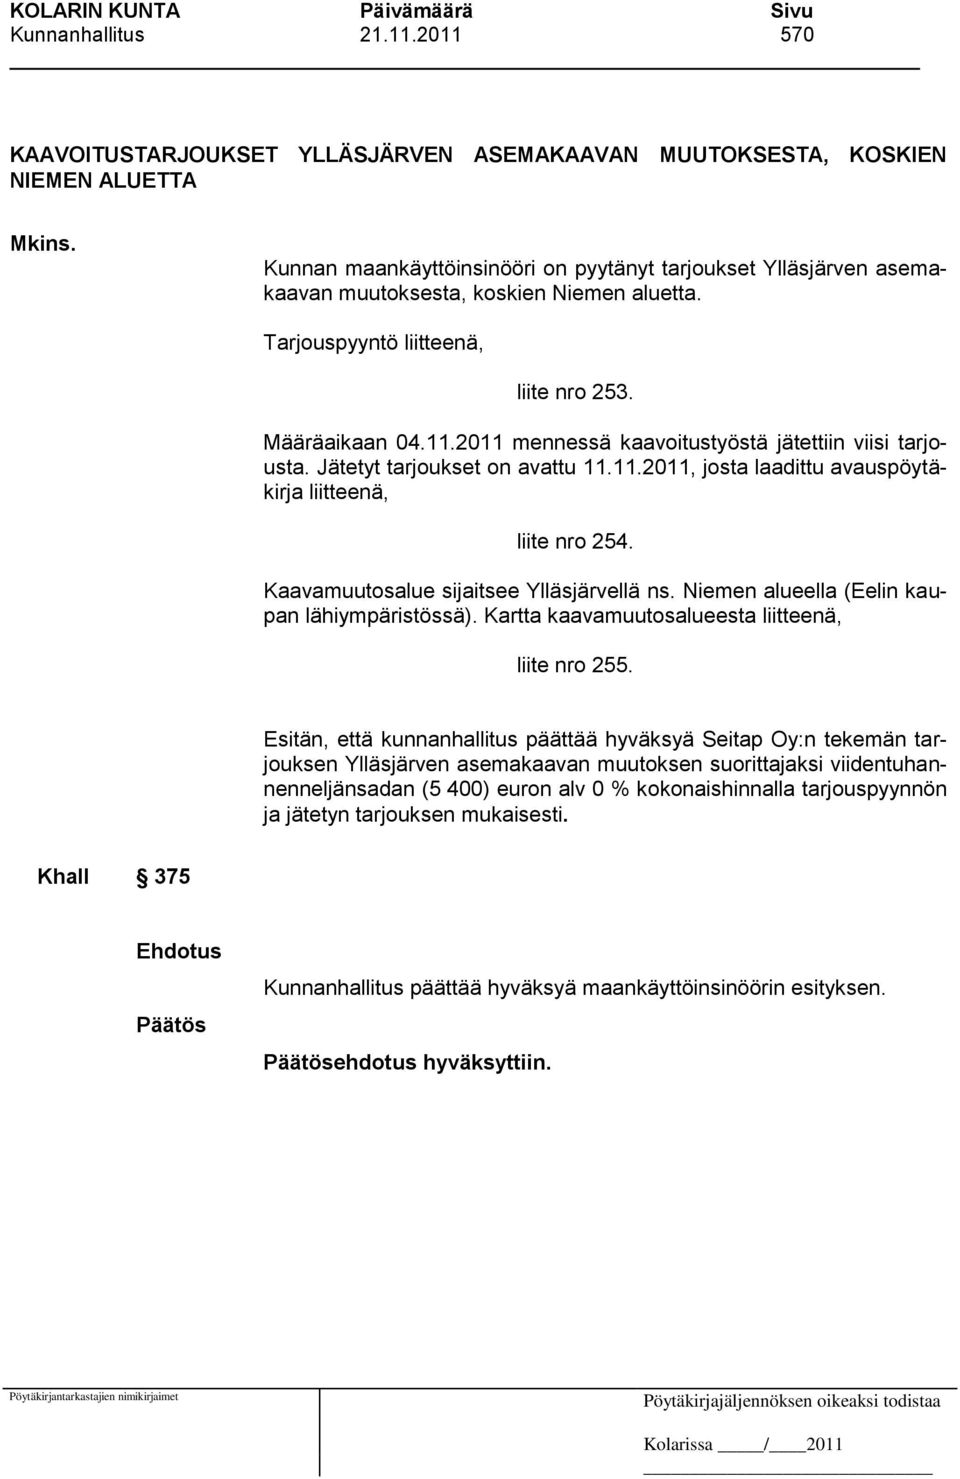 2011 mennessä kaavoitustyöstä jätettiin viisi tarjousta. Jätetyt tarjoukset on avattu 11.11.2011, josta laadittu avauspöytäkirja liitteenä, liite nro 254. Kaavamuutosalue sijaitsee Ylläsjärvellä ns.